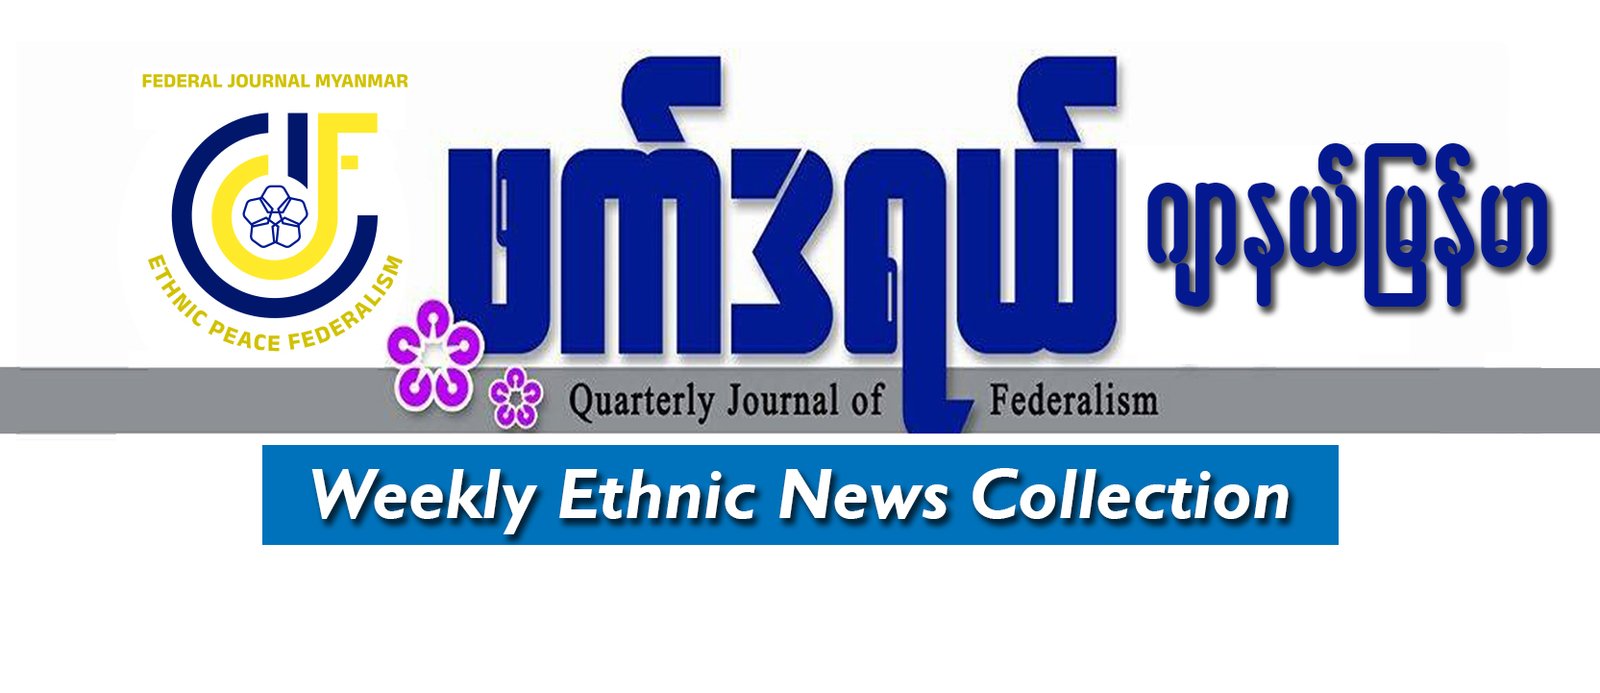 ဖက်ဒရယ်ဂျာနယ်မြန်မာရဲ့ အပတ်စဉ်လူမျိုးပေါင်းစုံသတင်း